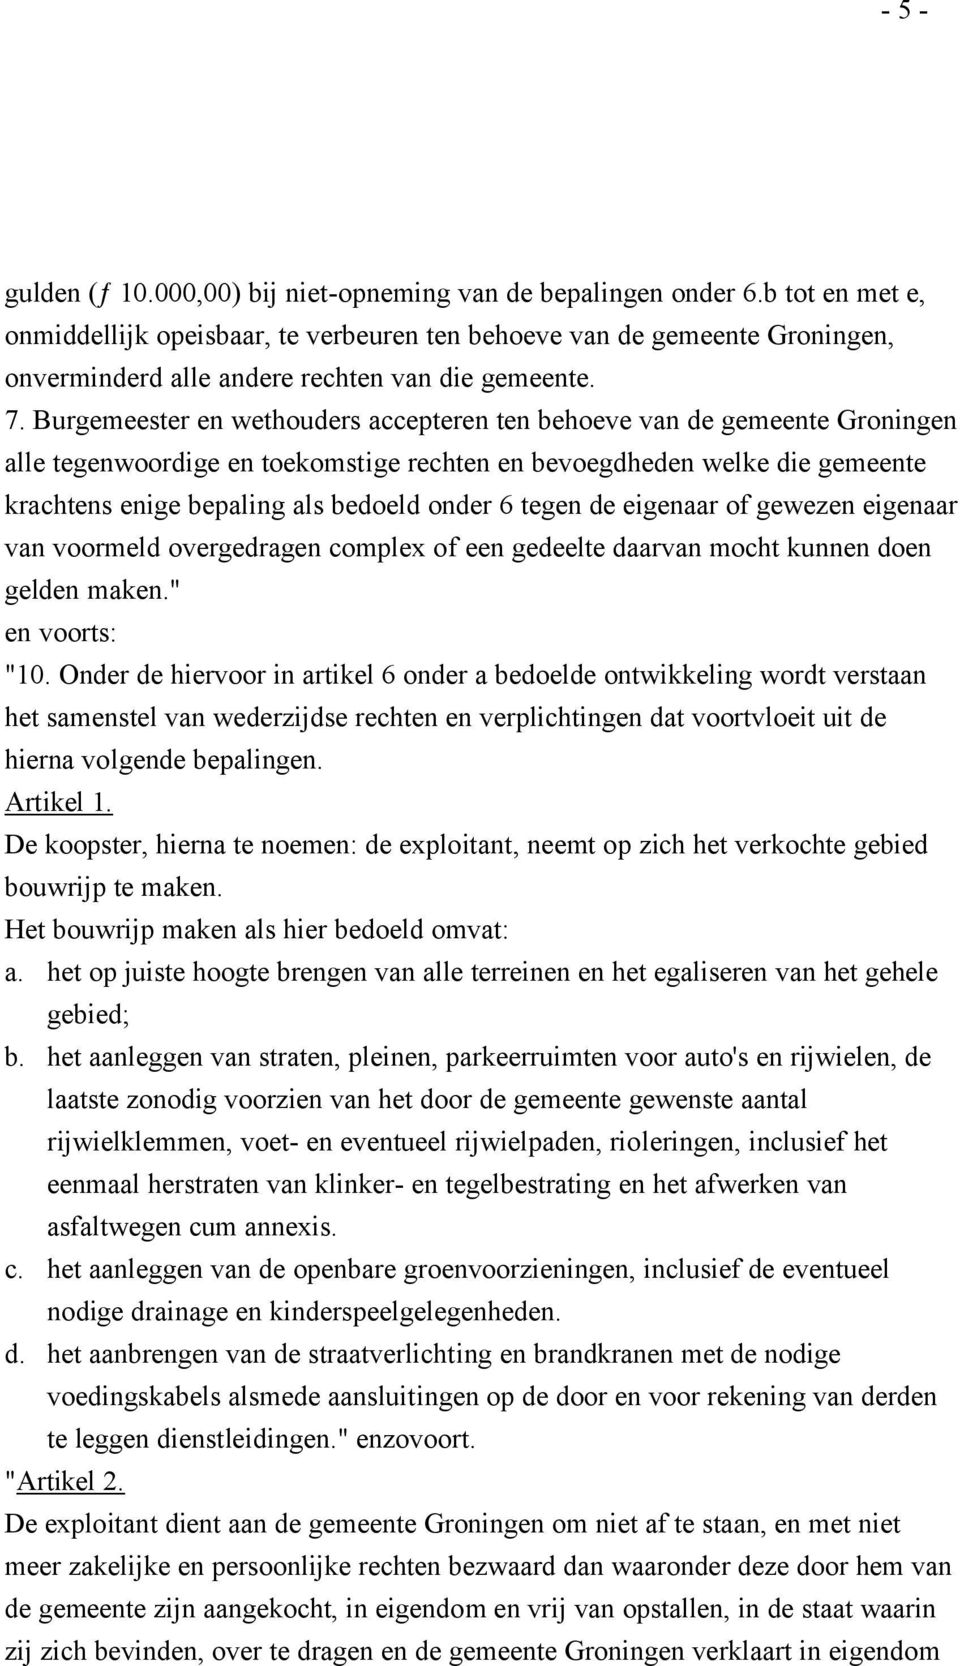 Burgemeester en wethouders accepteren ten behoeve van de gemeente Groningen alle tegenwoordige en toekomstige rechten en bevoegdheden welke die gemeente krachtens enige bepaling als bedoeld onder 6